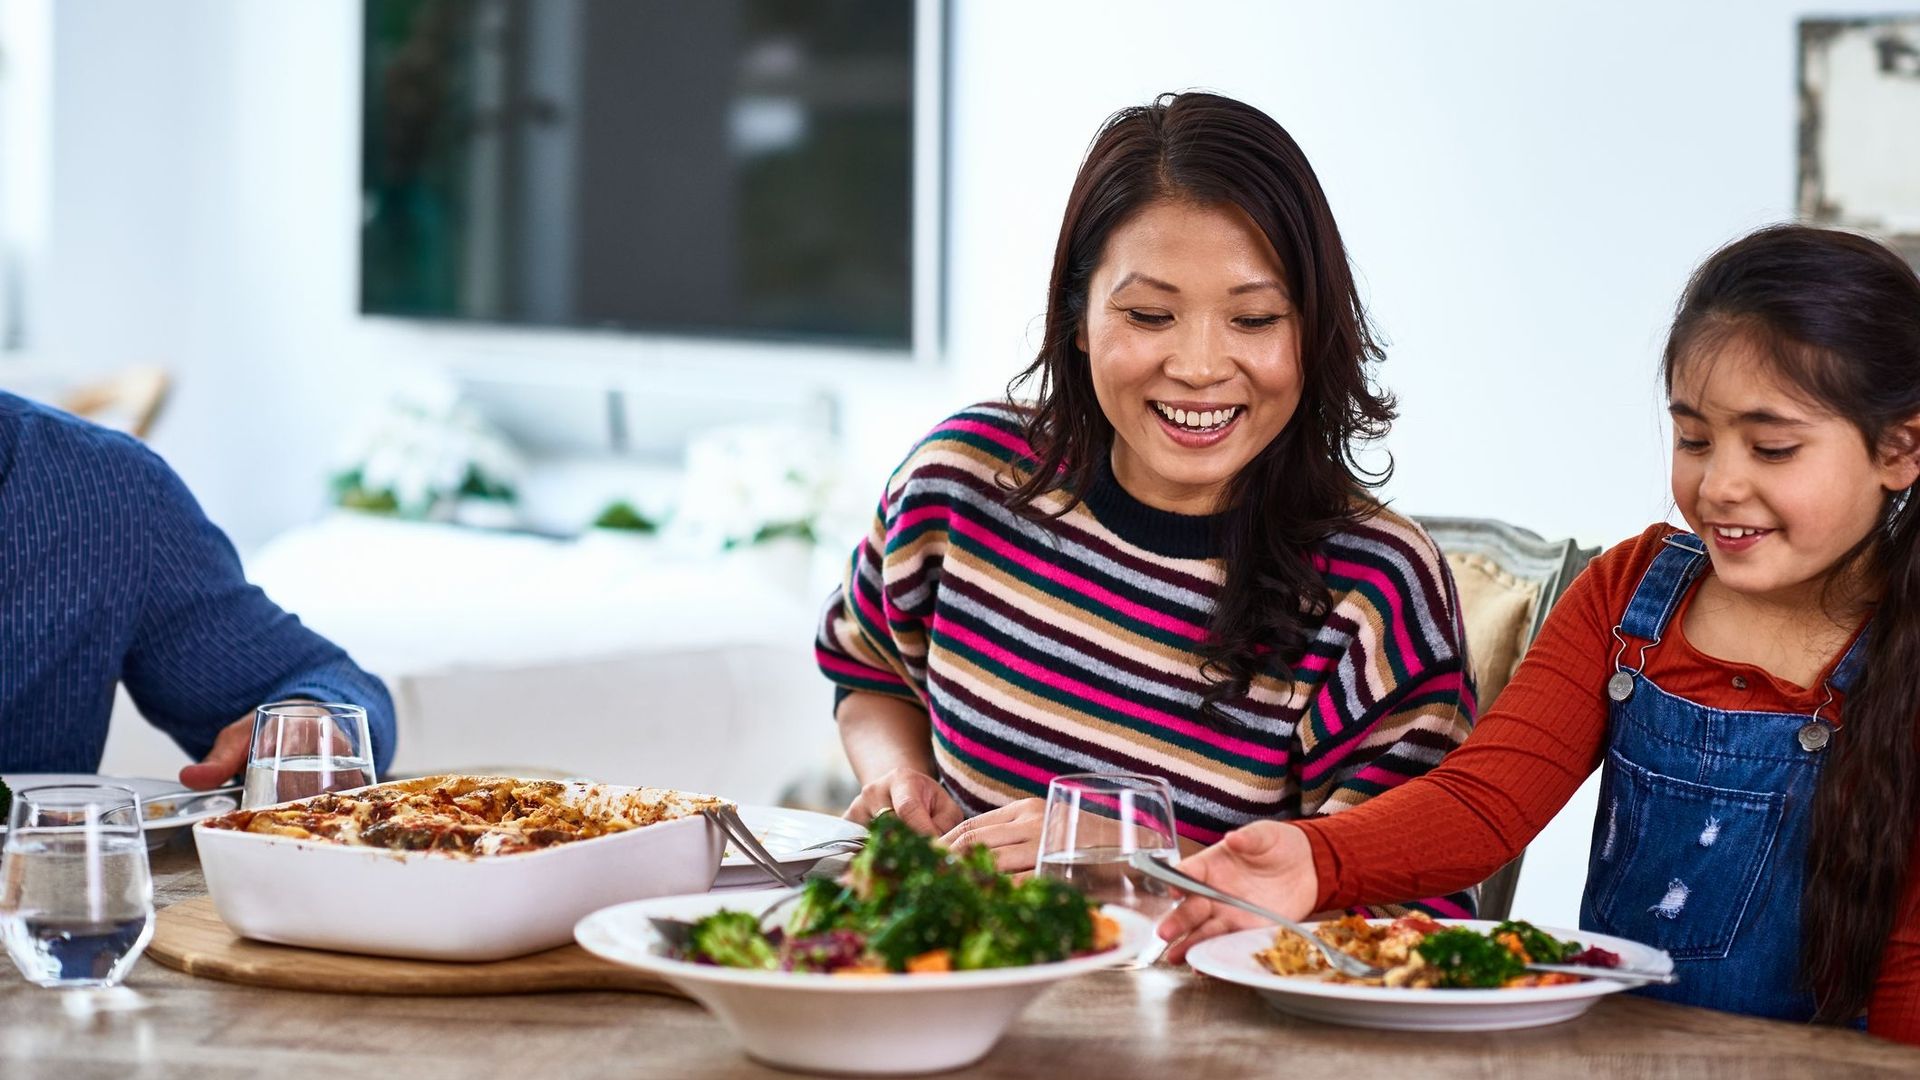 Prendre les repas en famille aiderait à améliorer ses habitudes alimentaires.